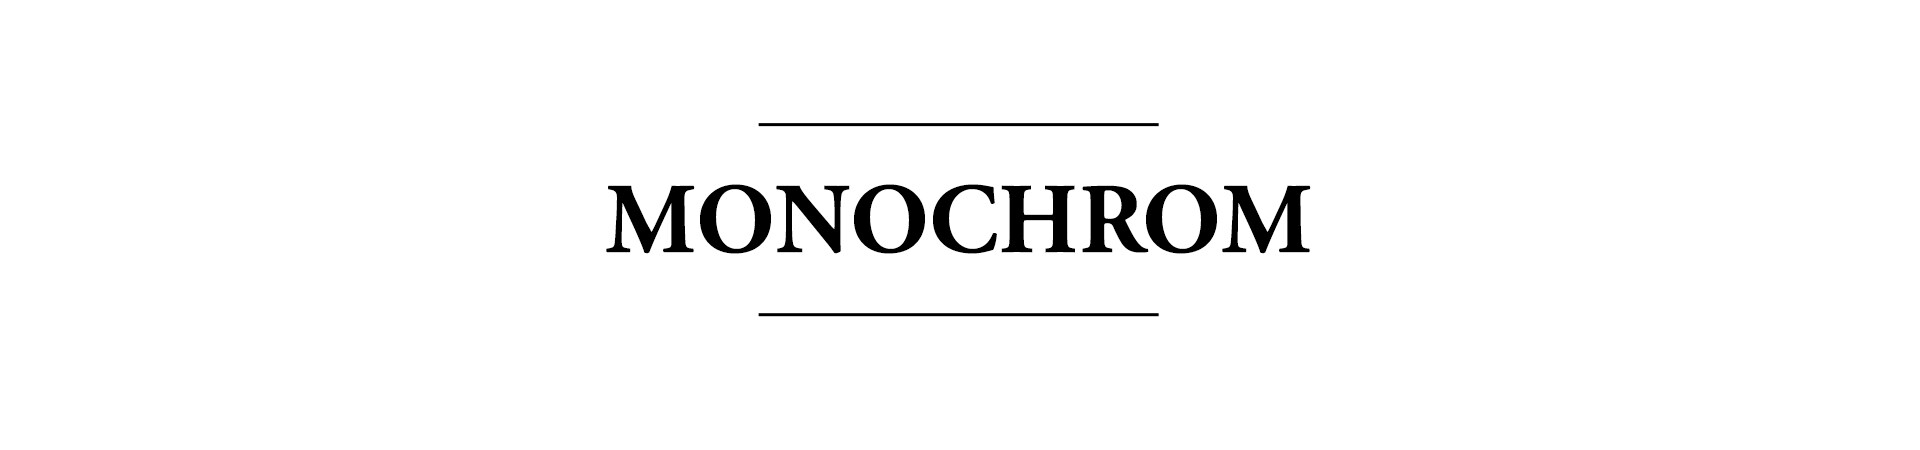 Monochrome | Walbusch